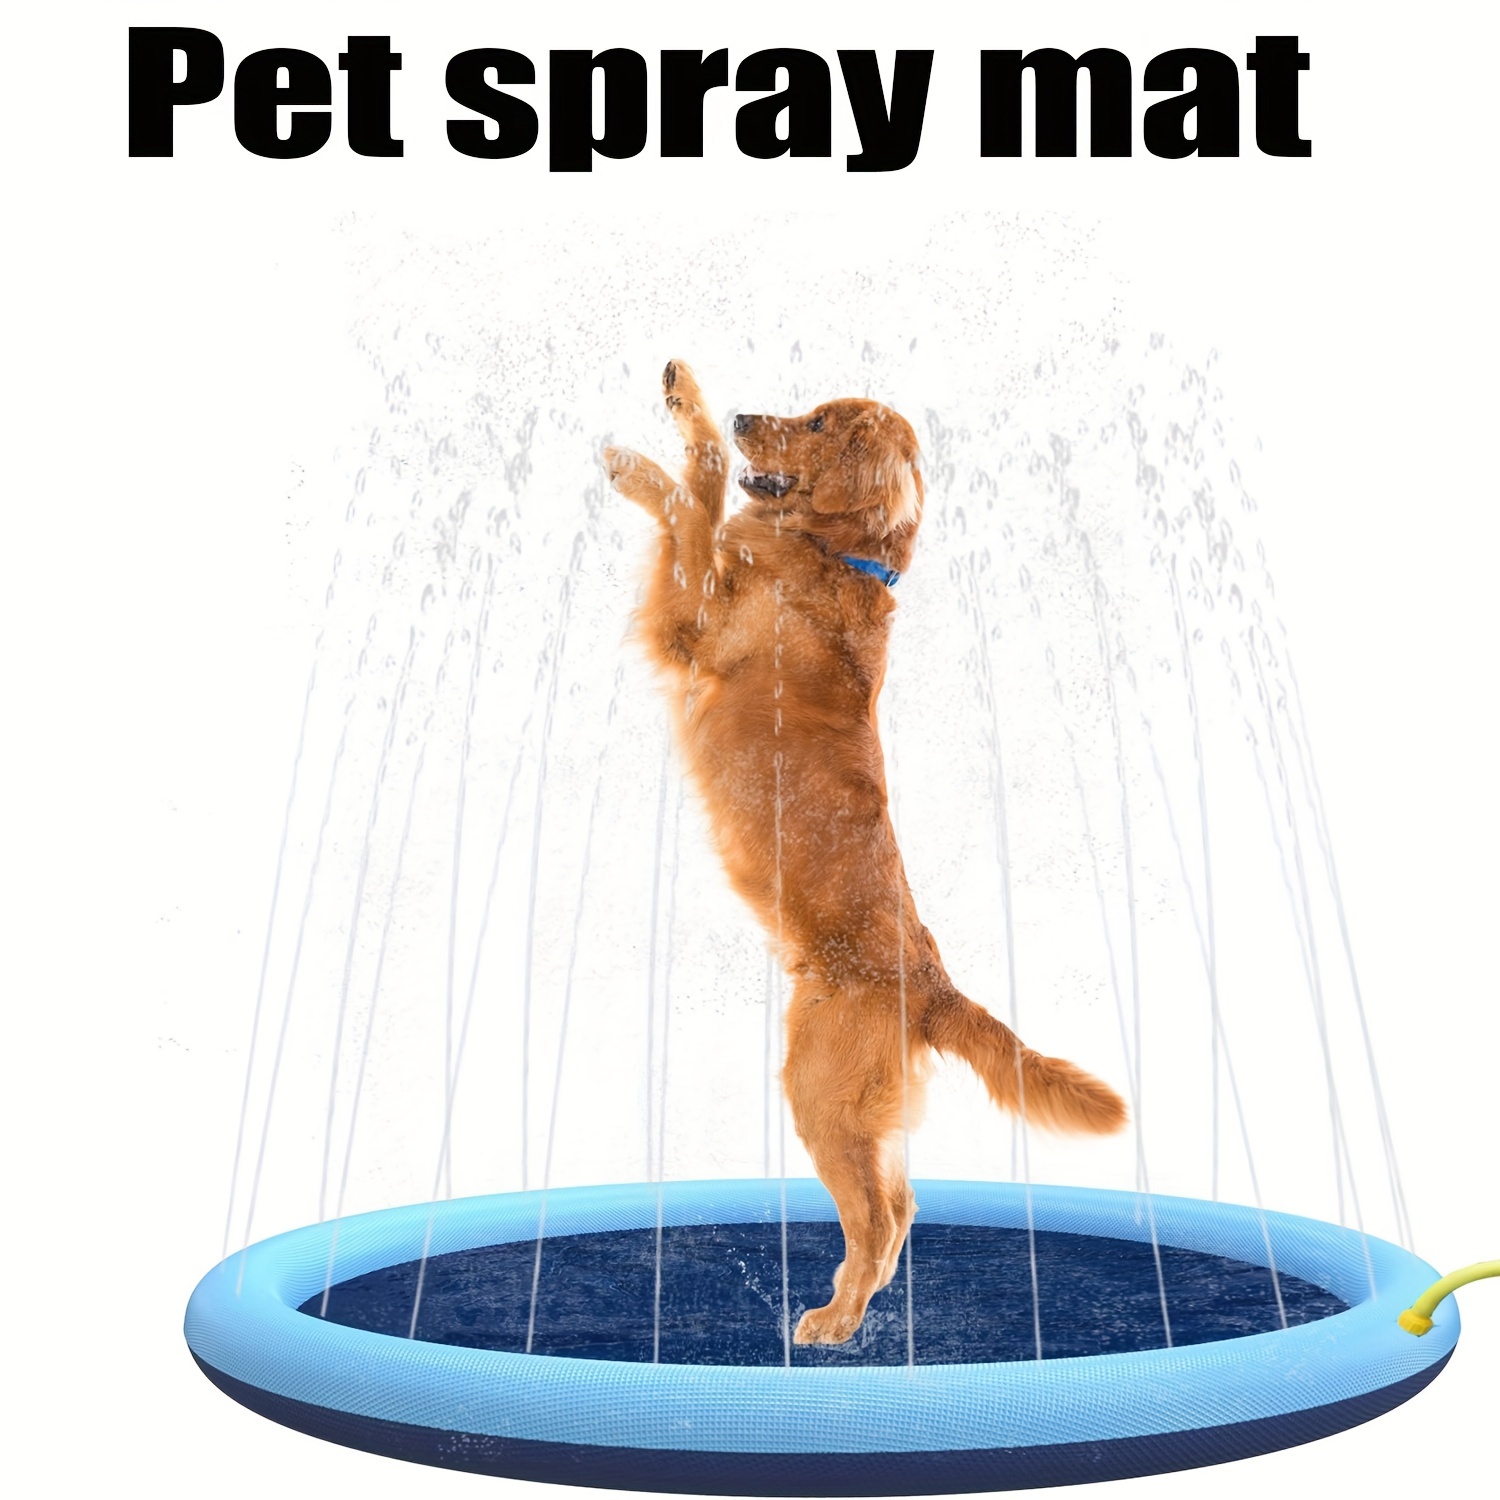 

Tapis d'arrosage pliable pour chien, tapis de jeu d'eau en PVC épais pour chien, piscine d'été pour animaux de compagnie, facile à utiliser et à nettoyer, jouet de bain pour le toilettage des chiens